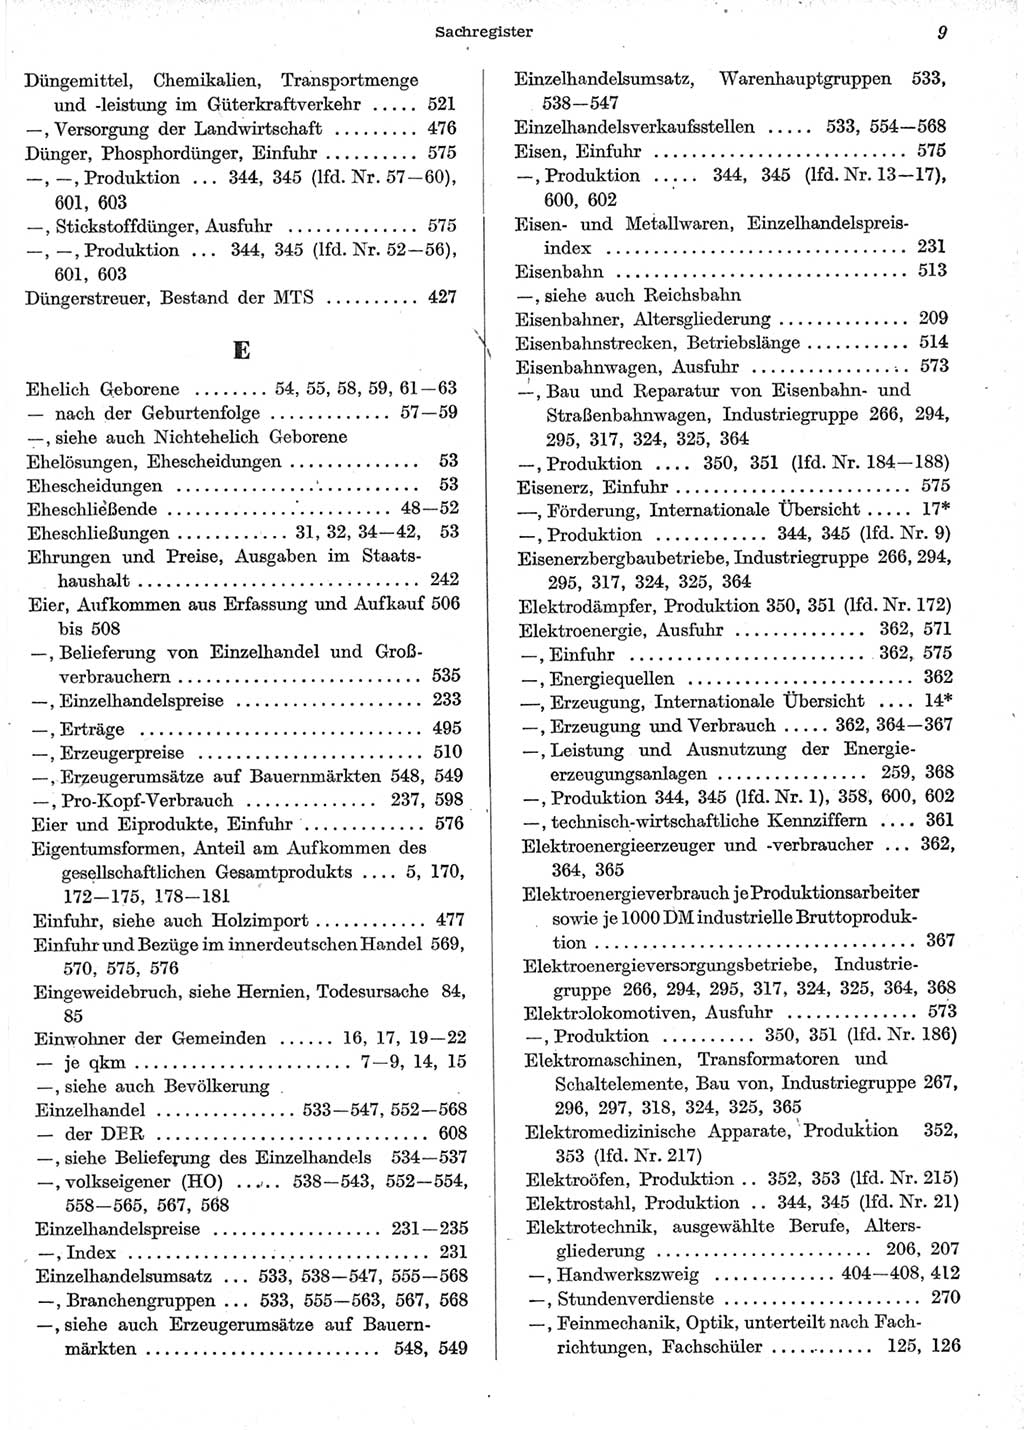 Statistisches Jahrbuch der Deutschen Demokratischen Republik (DDR) 1958, Seite 9 (Stat. Jb. DDR 1958, S. 9)